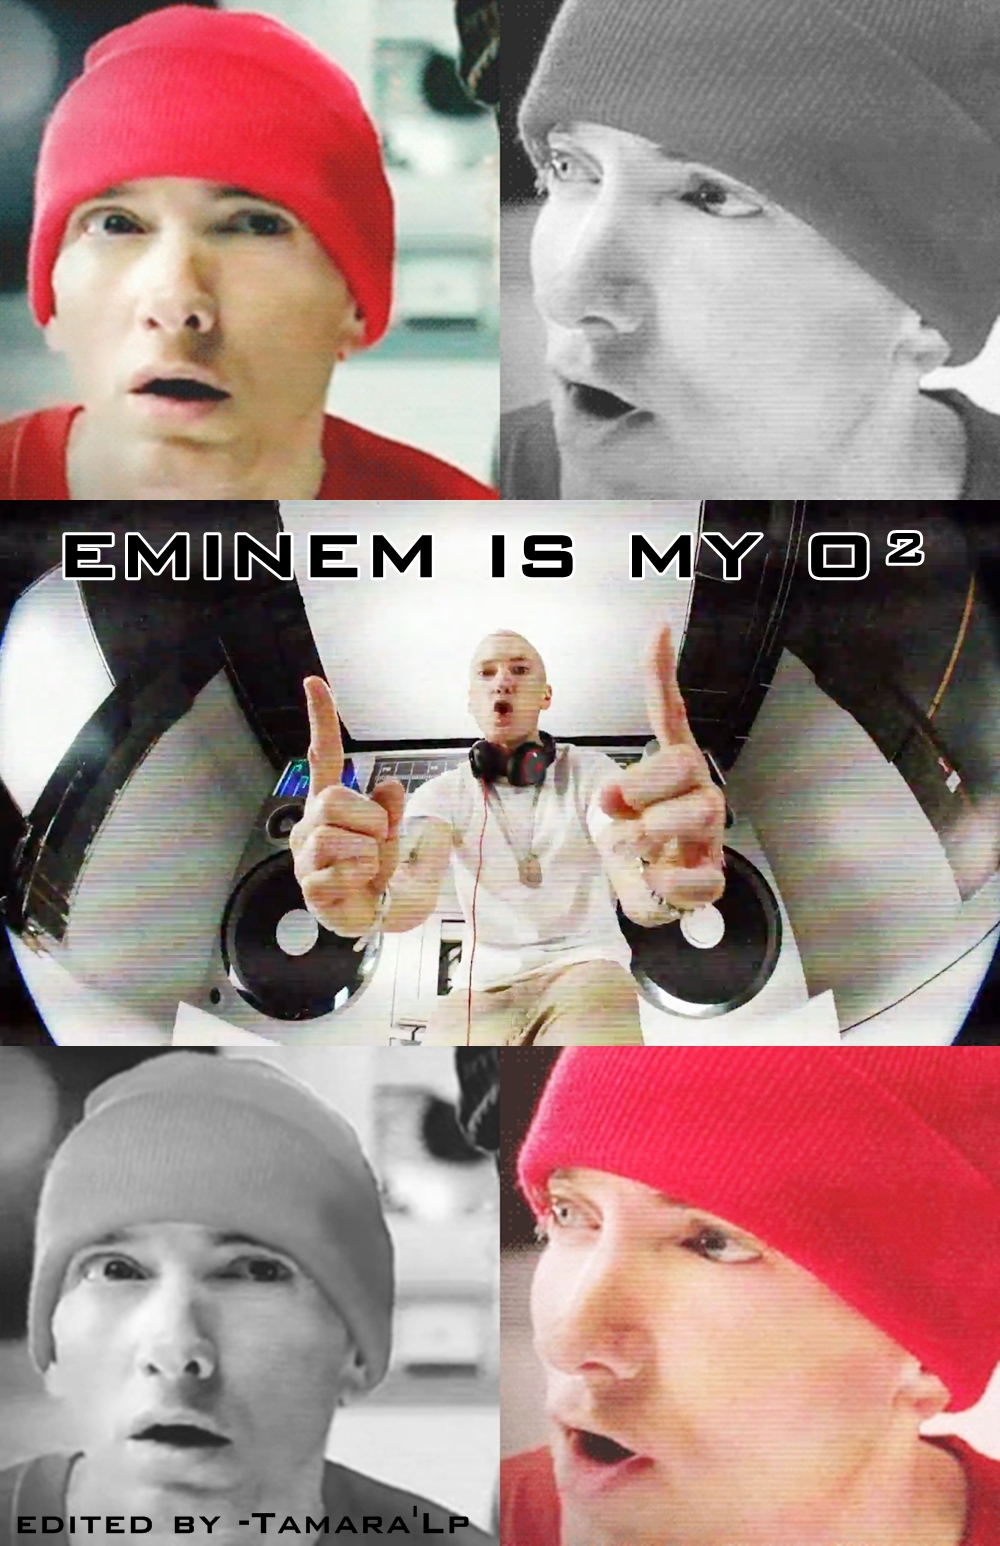 Eminem - Berzerk by EminemIsMyOxygen on DeviantArt